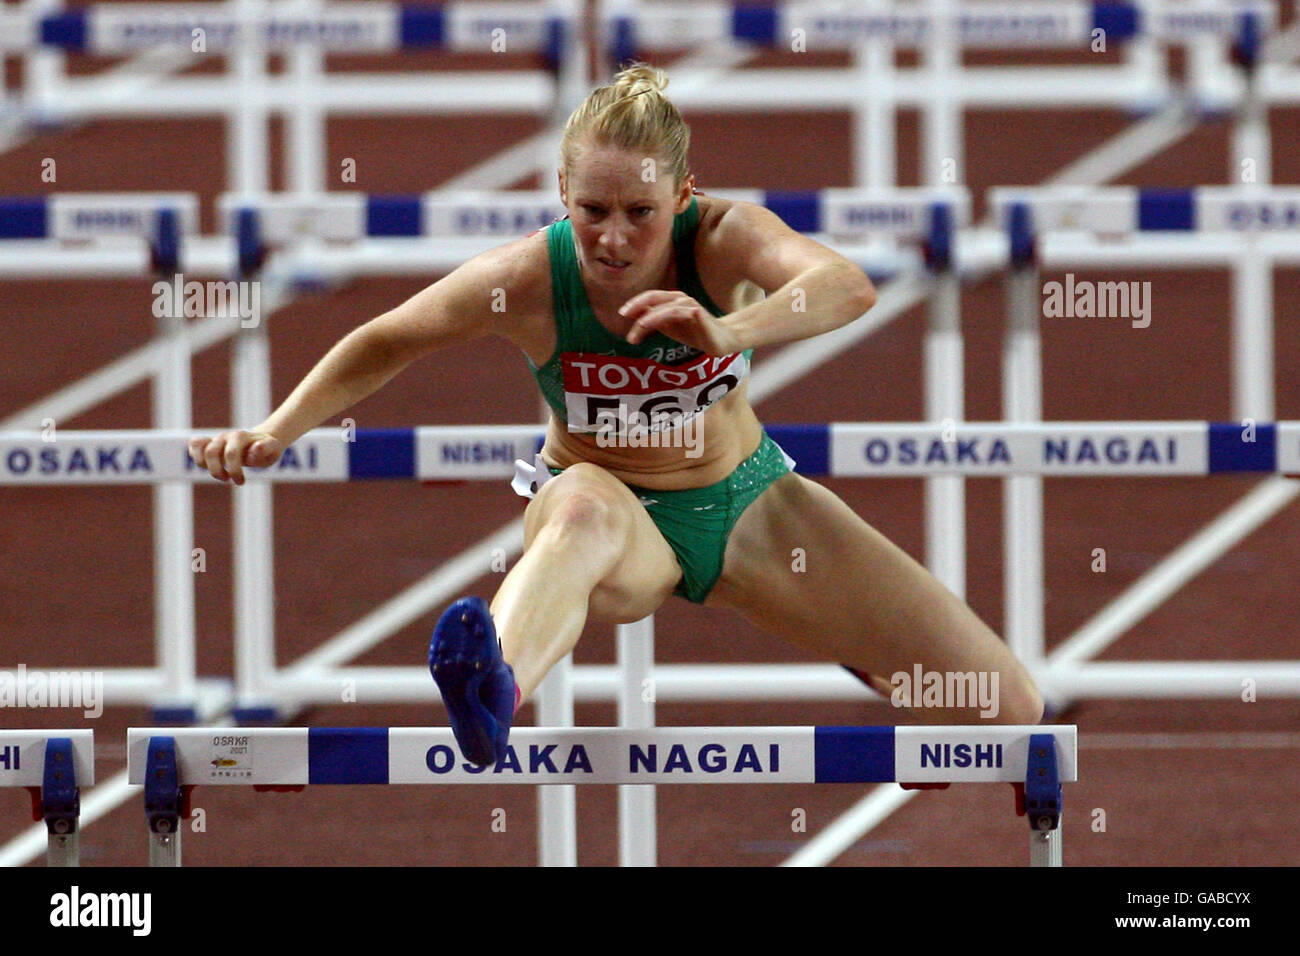 Athletics - IAAF World Athletics Championships - Osaka 2007 - Nagai Stadium Stock Photo